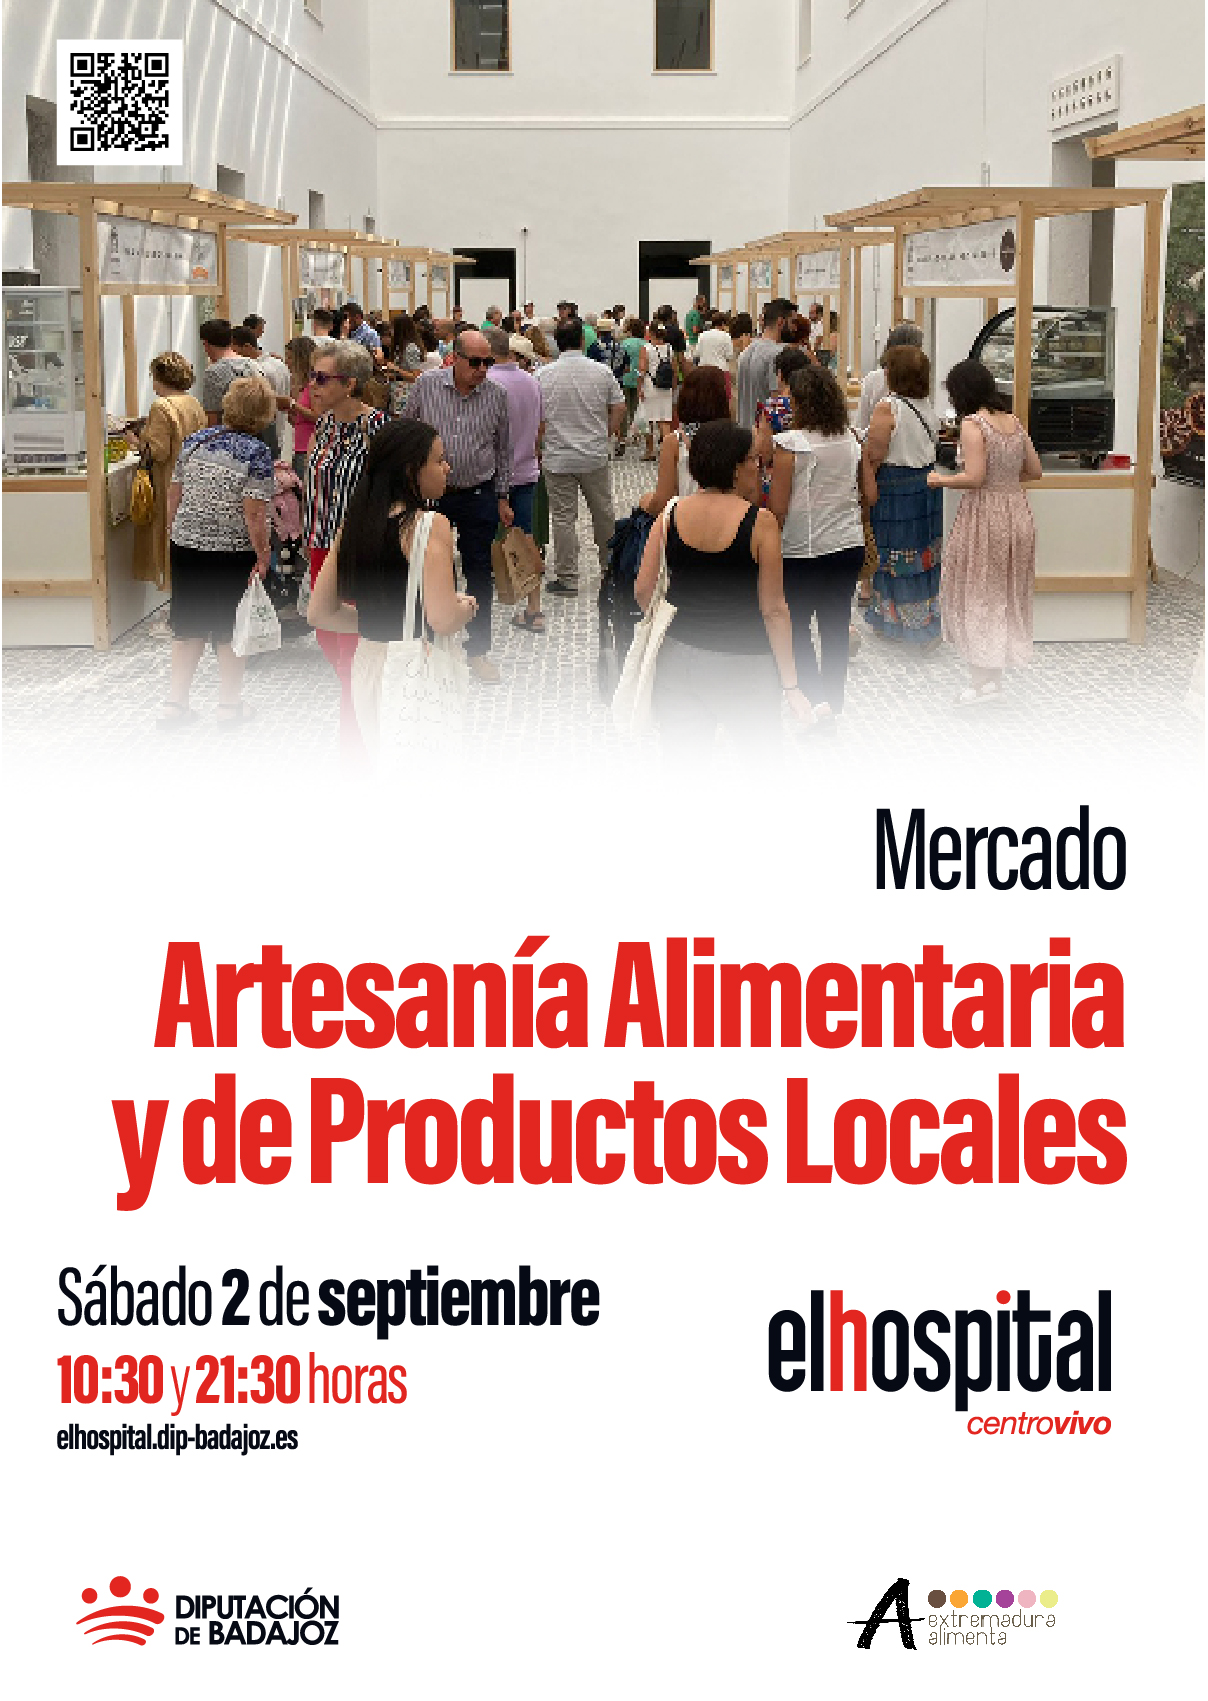 Mercado de Artesanía y Alimentaria y de Productos Locales